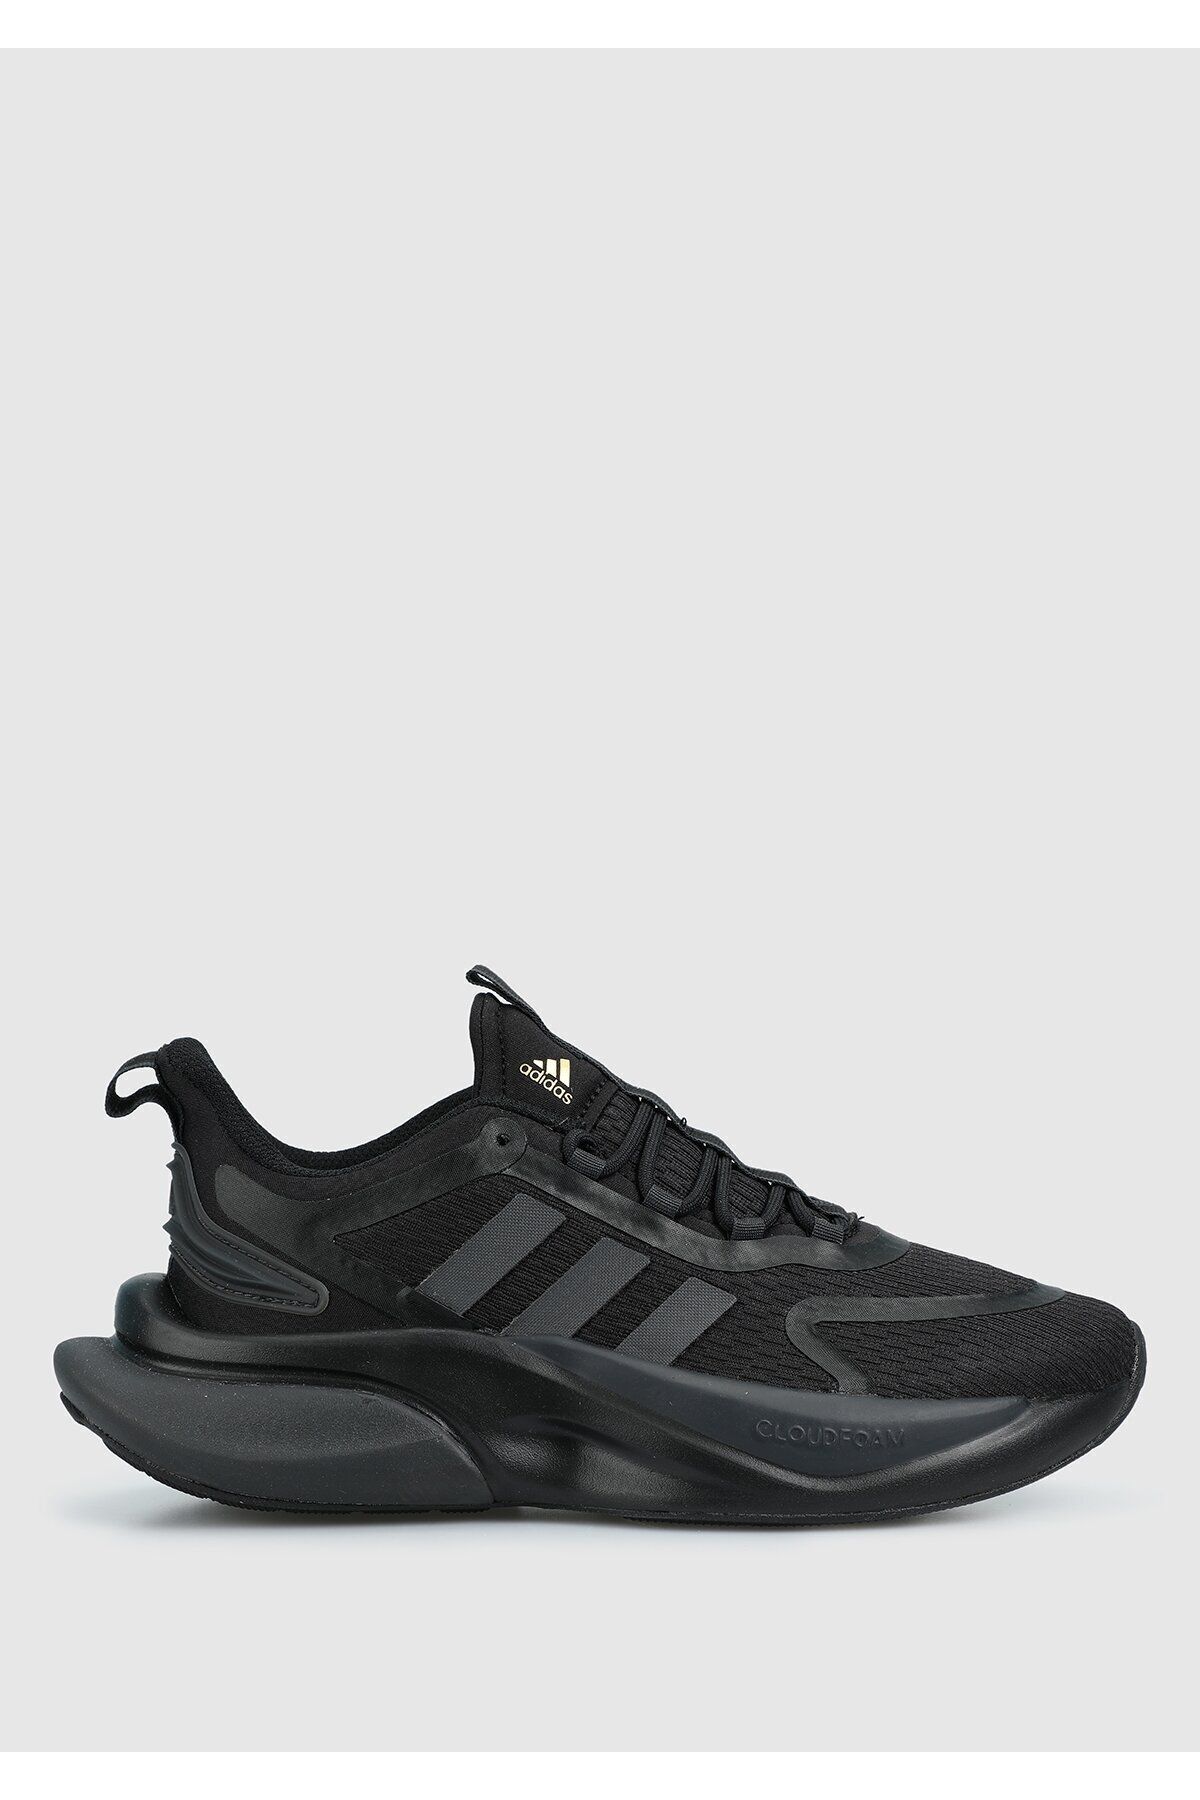 adidas Alphabounce Siyah Kadın Koşu Ayakkabısı Hp6149